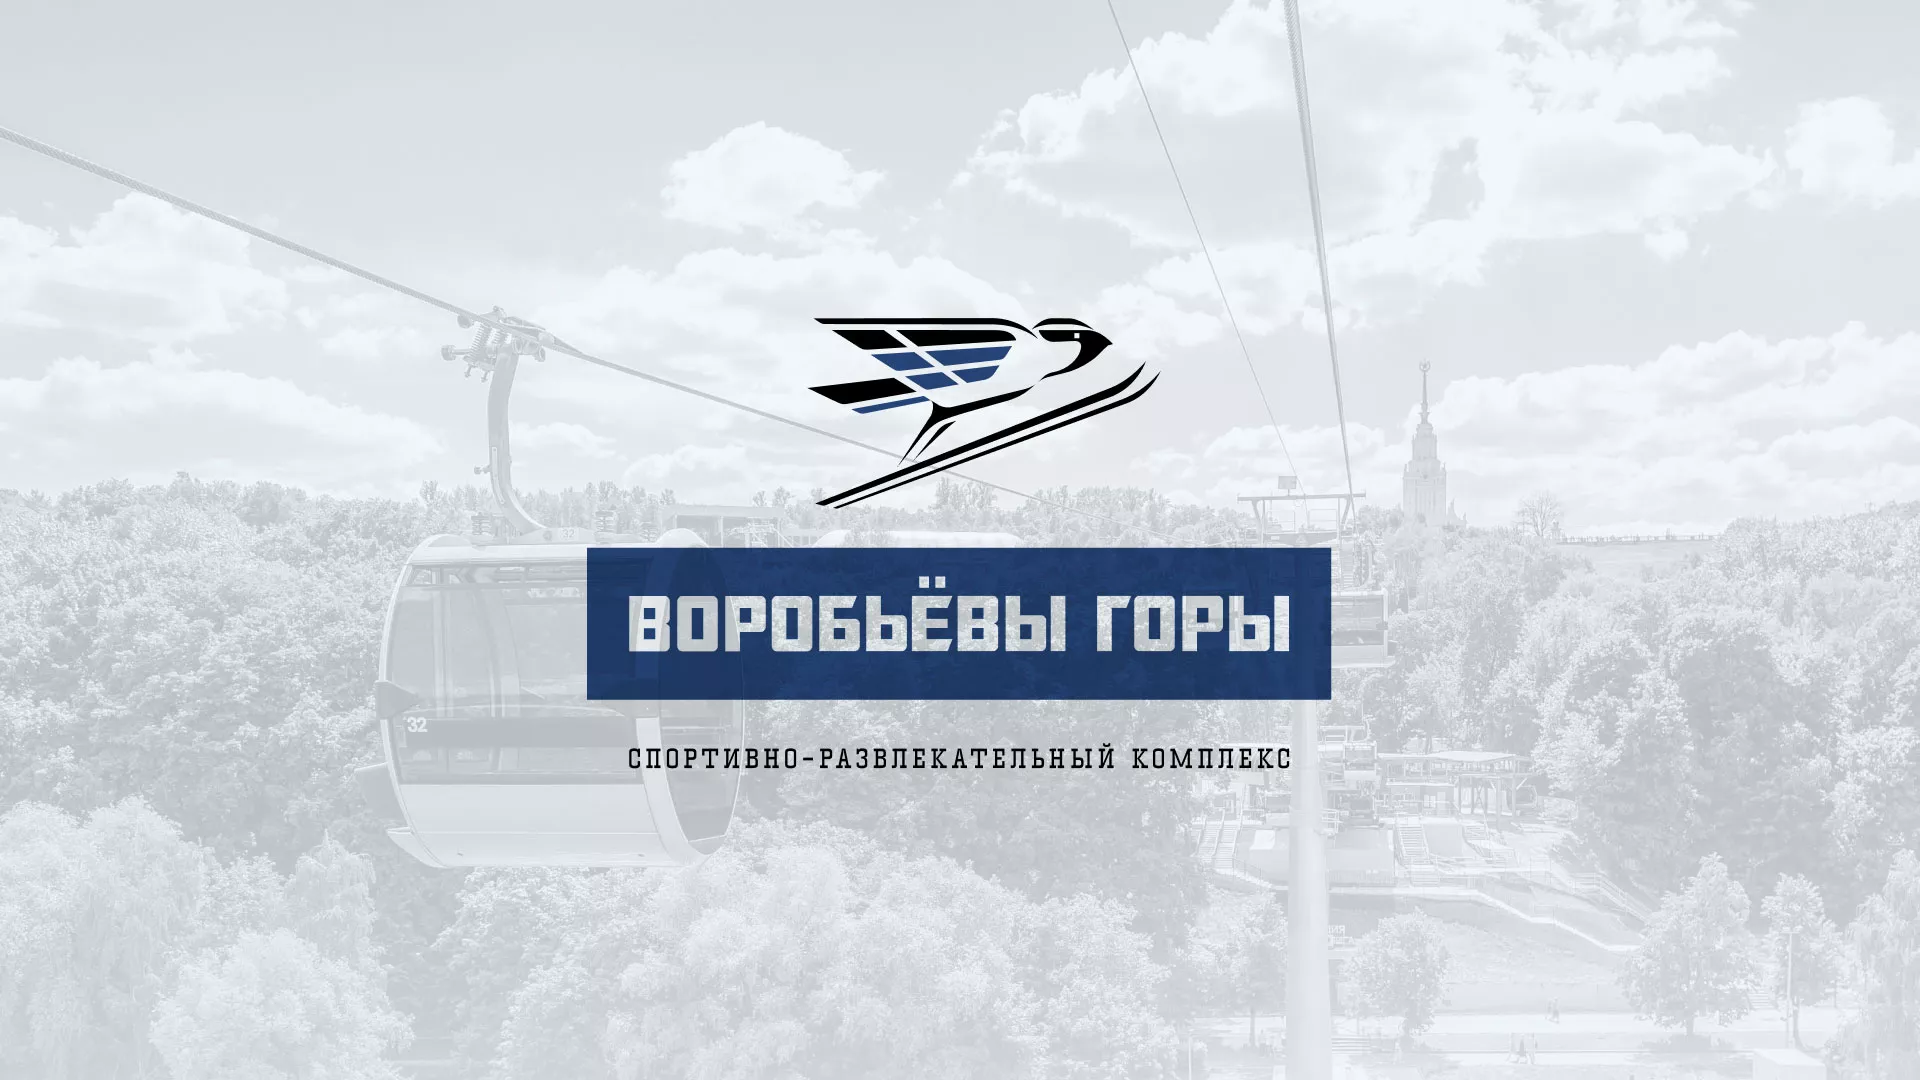 Разработка сайта в Кимовске для спортивно-развлекательного комплекса «Воробьёвы горы»